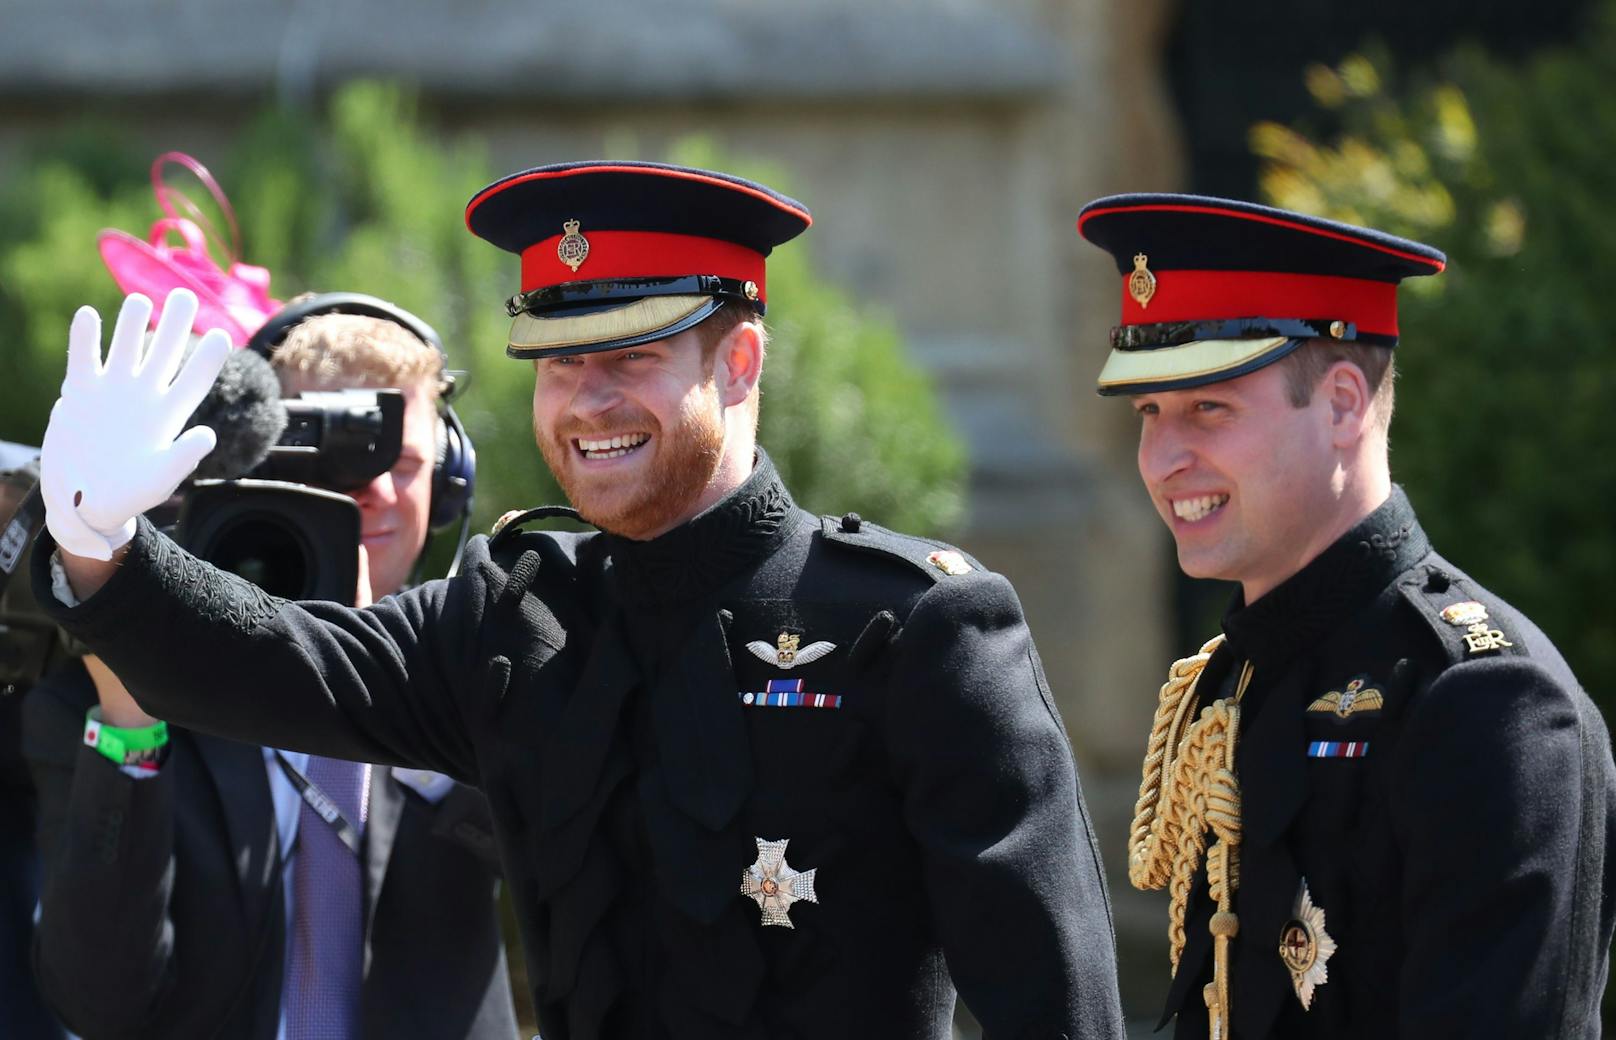 Hat gut lachen: Prinz Harry schnappt seinen Bruder den Titel "Sexiest Royal" weg